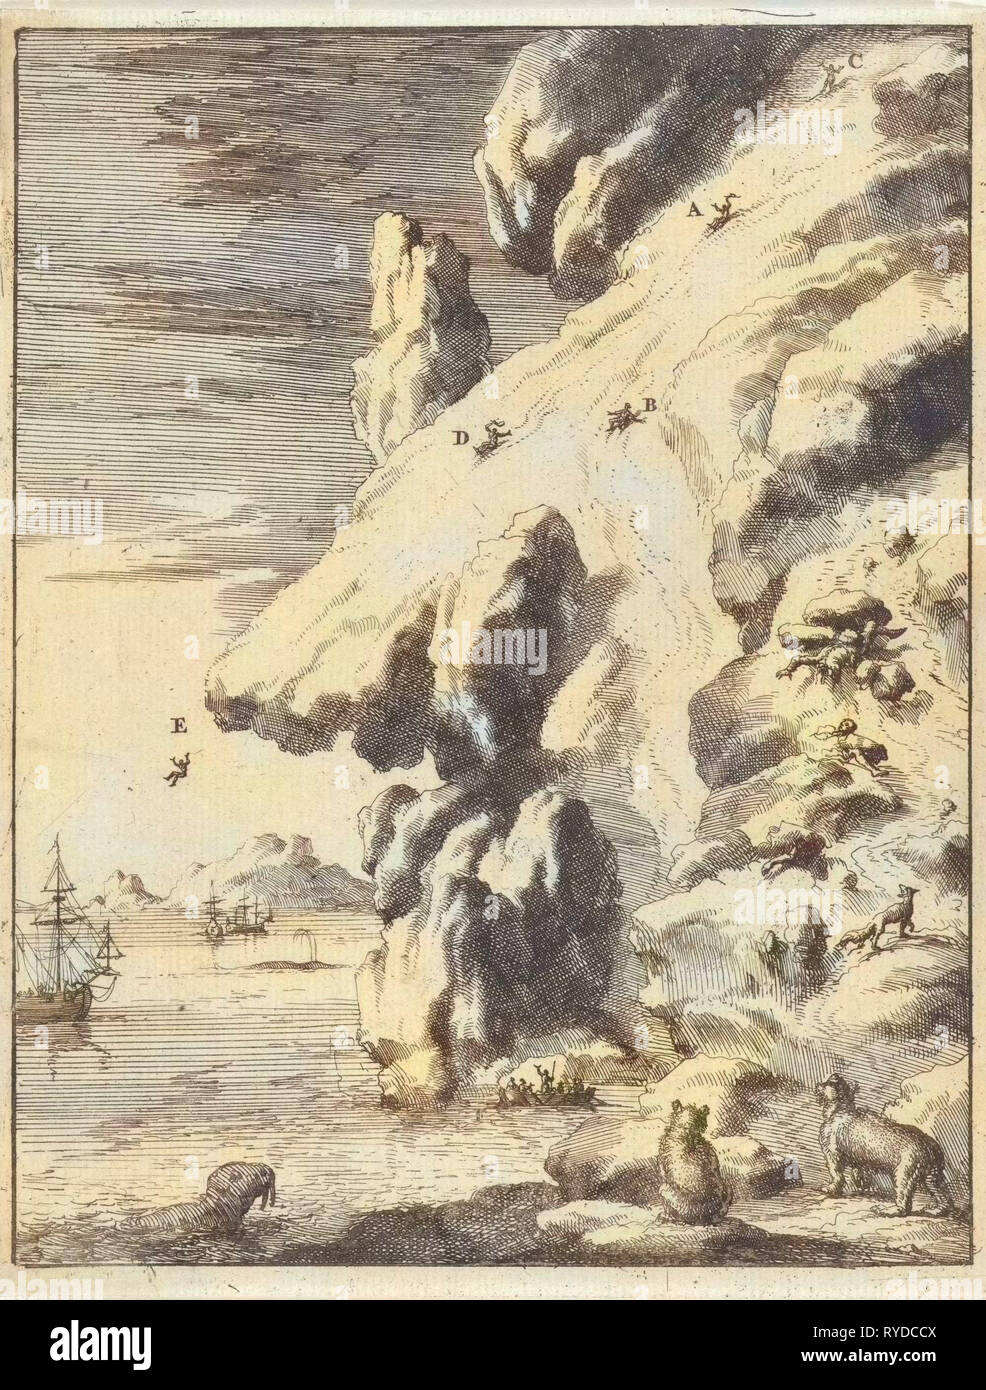 Mariners slip off an iceberg, Jan Luyken, 1684 Stock Photo